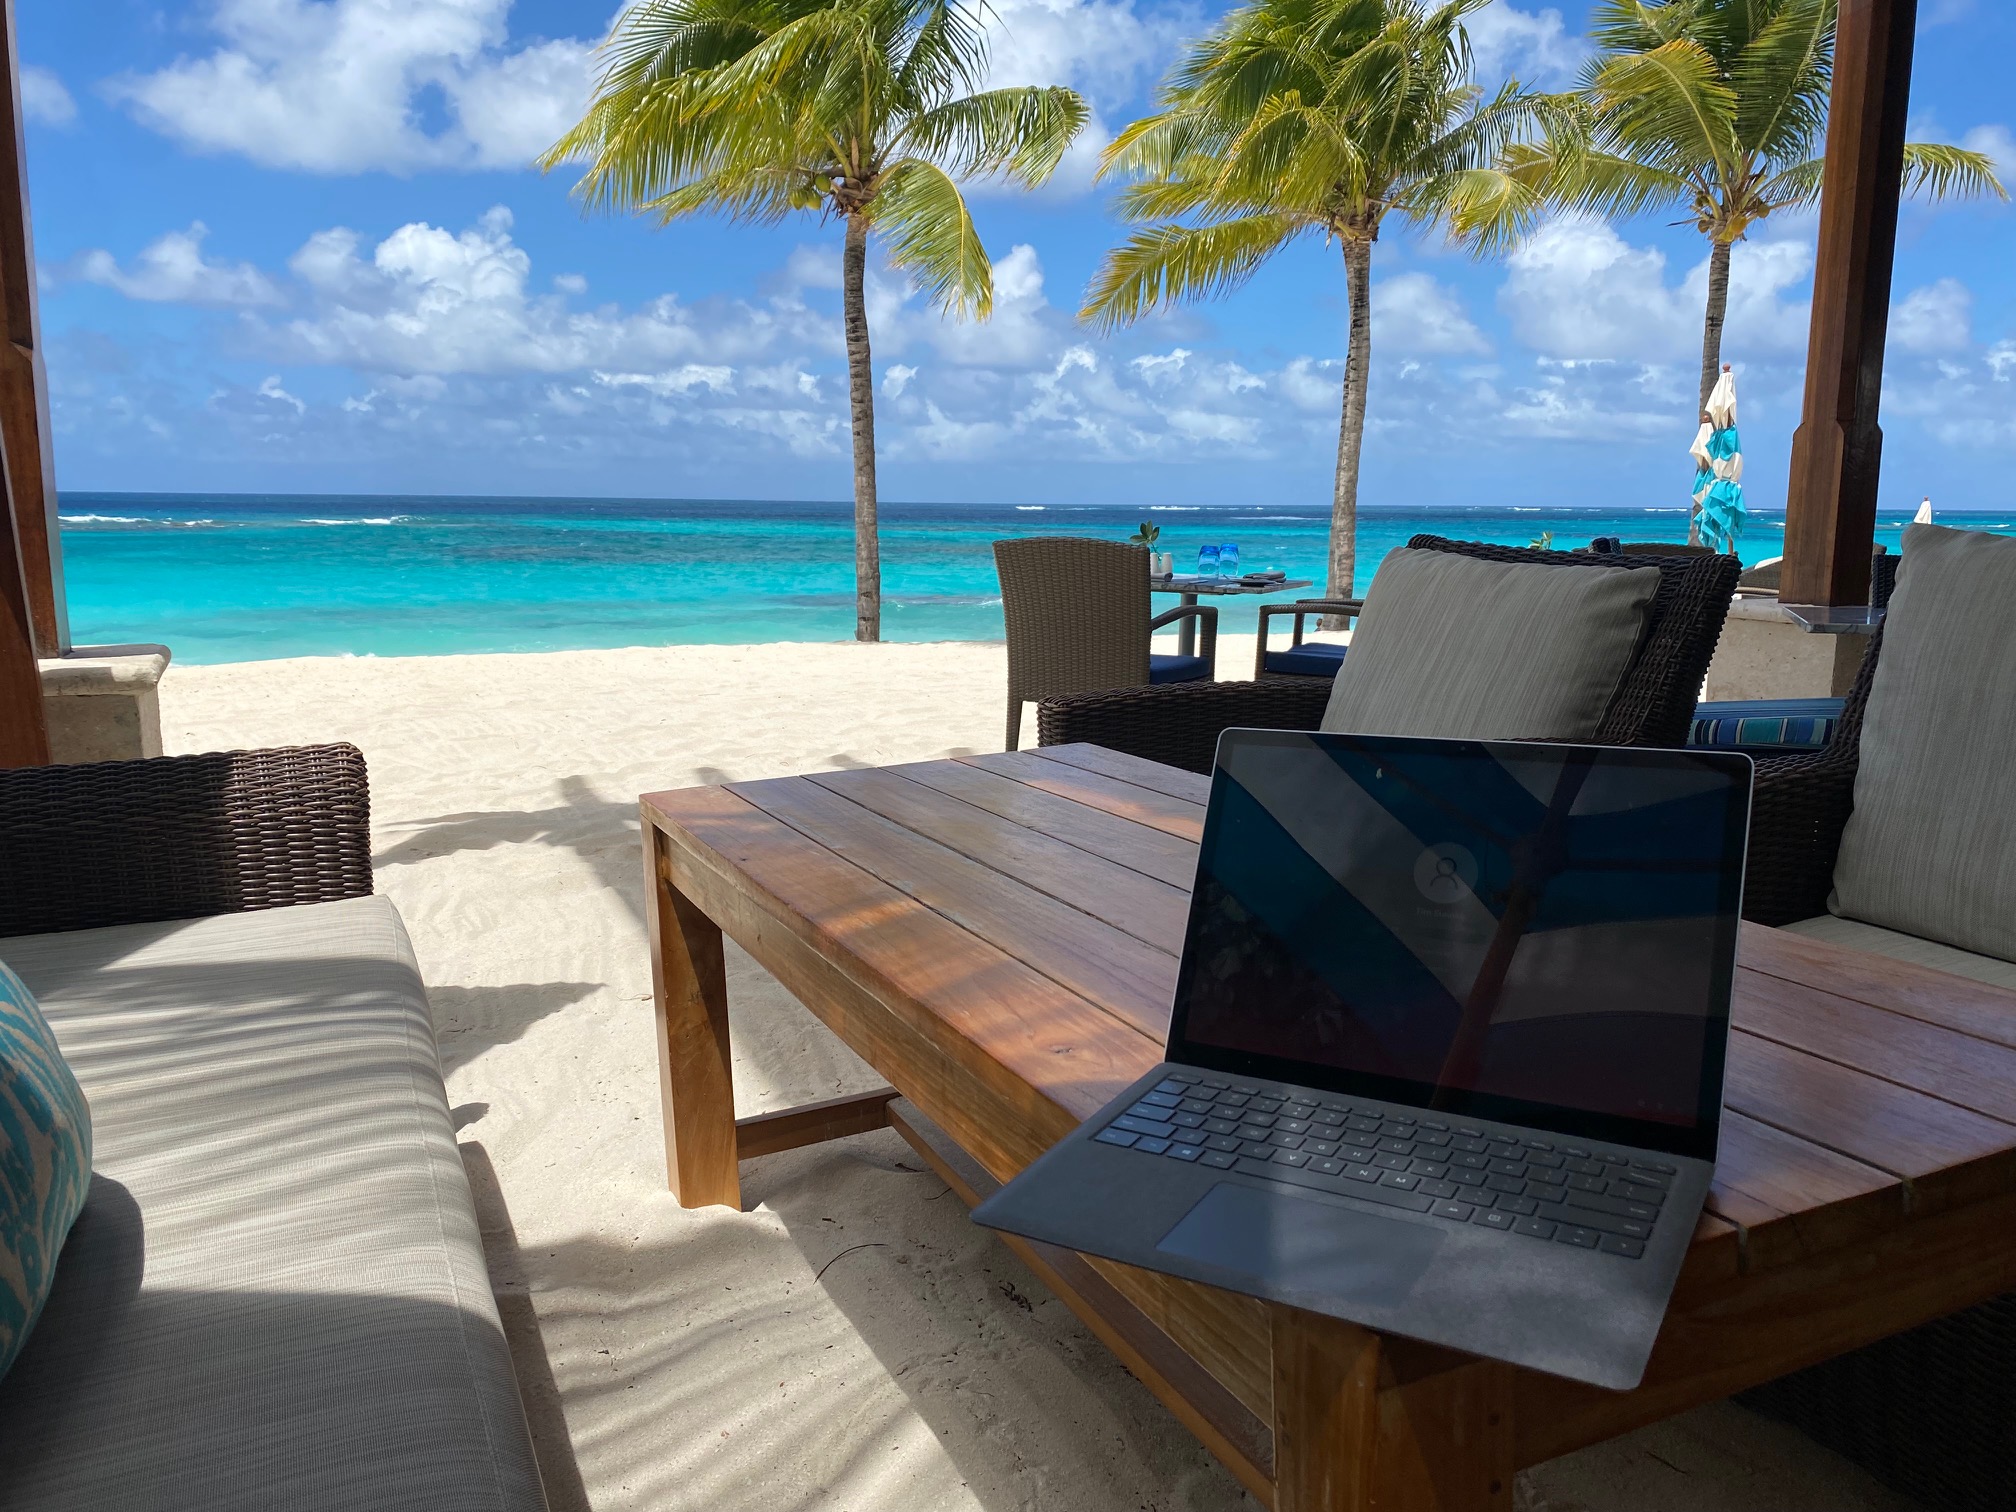 a laptop on a table on a beach